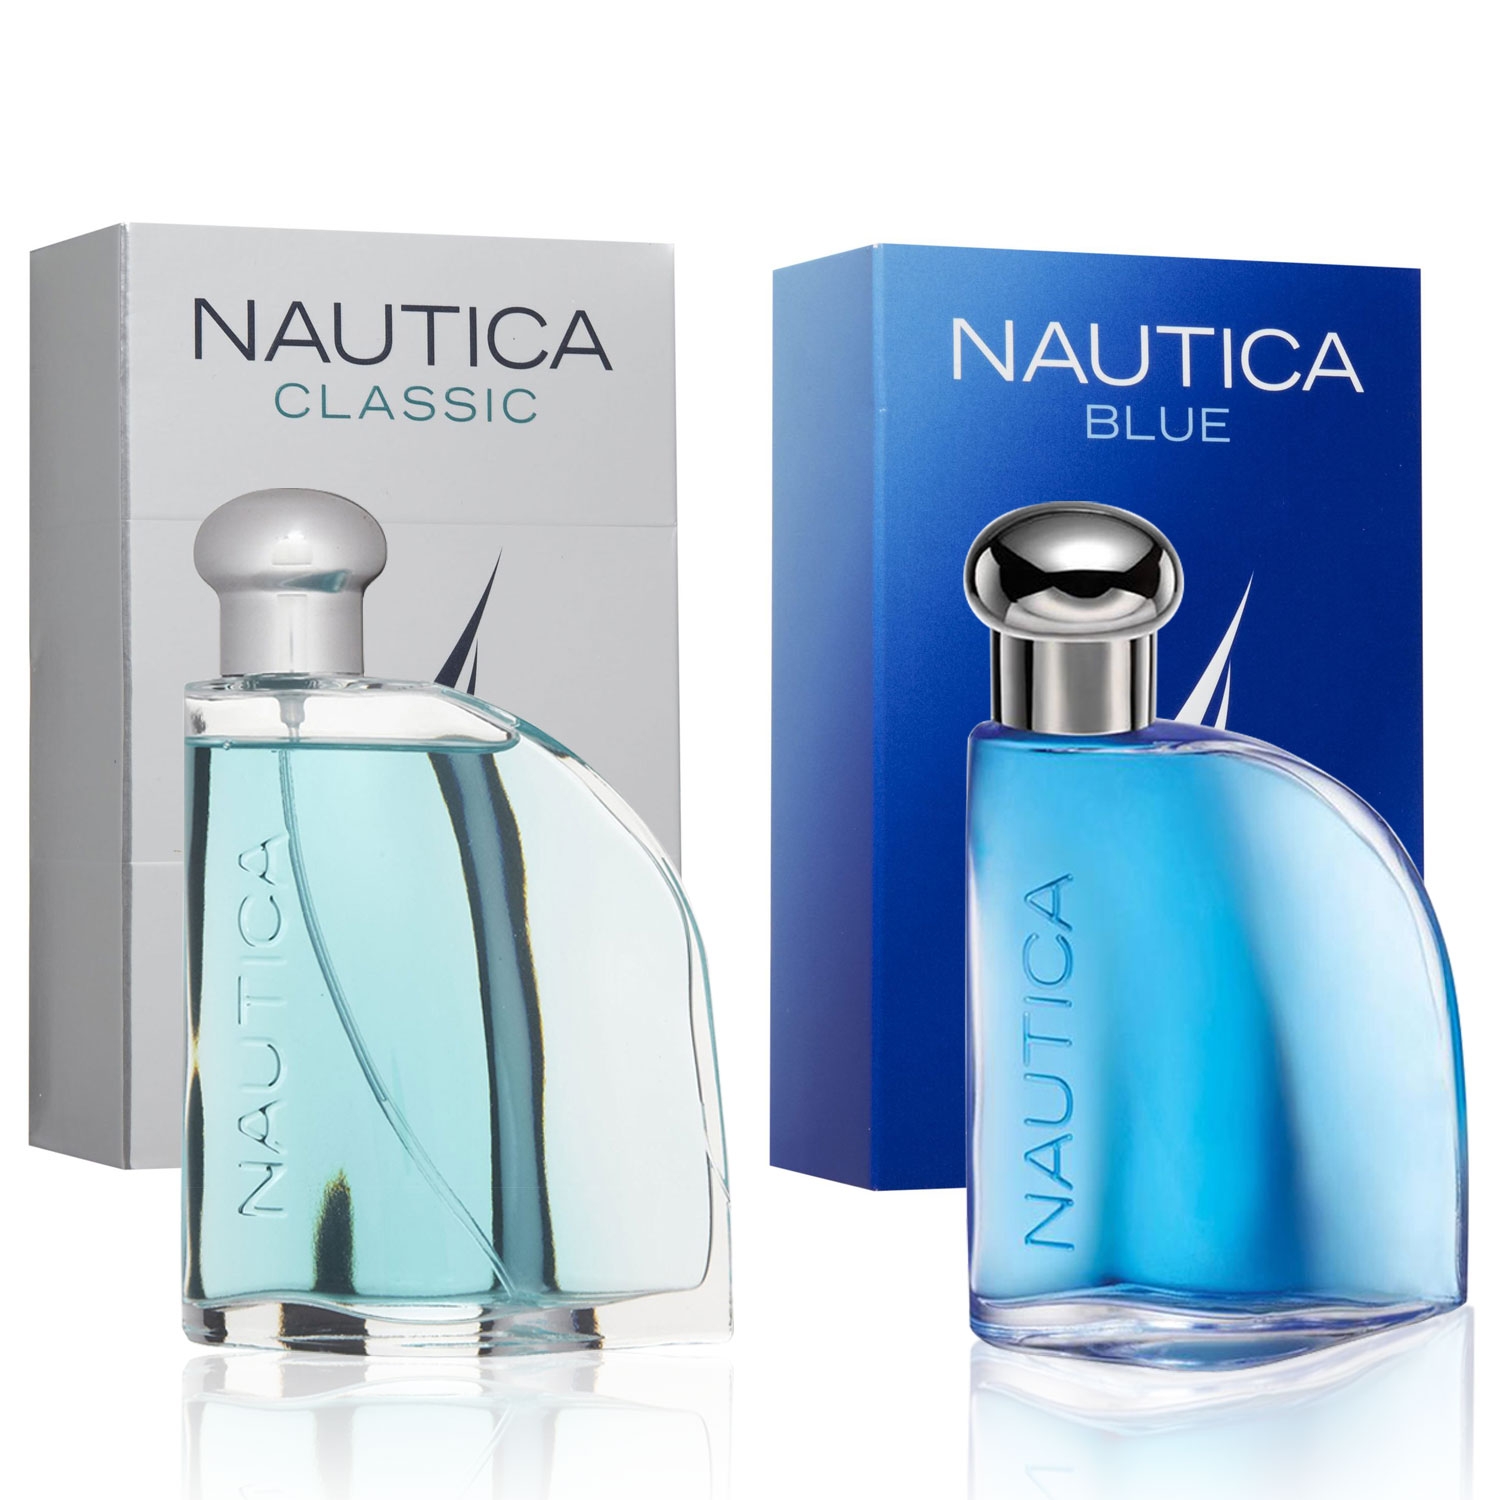 Paquete Nautica Blue + Nautica Classic Edt 100 ml